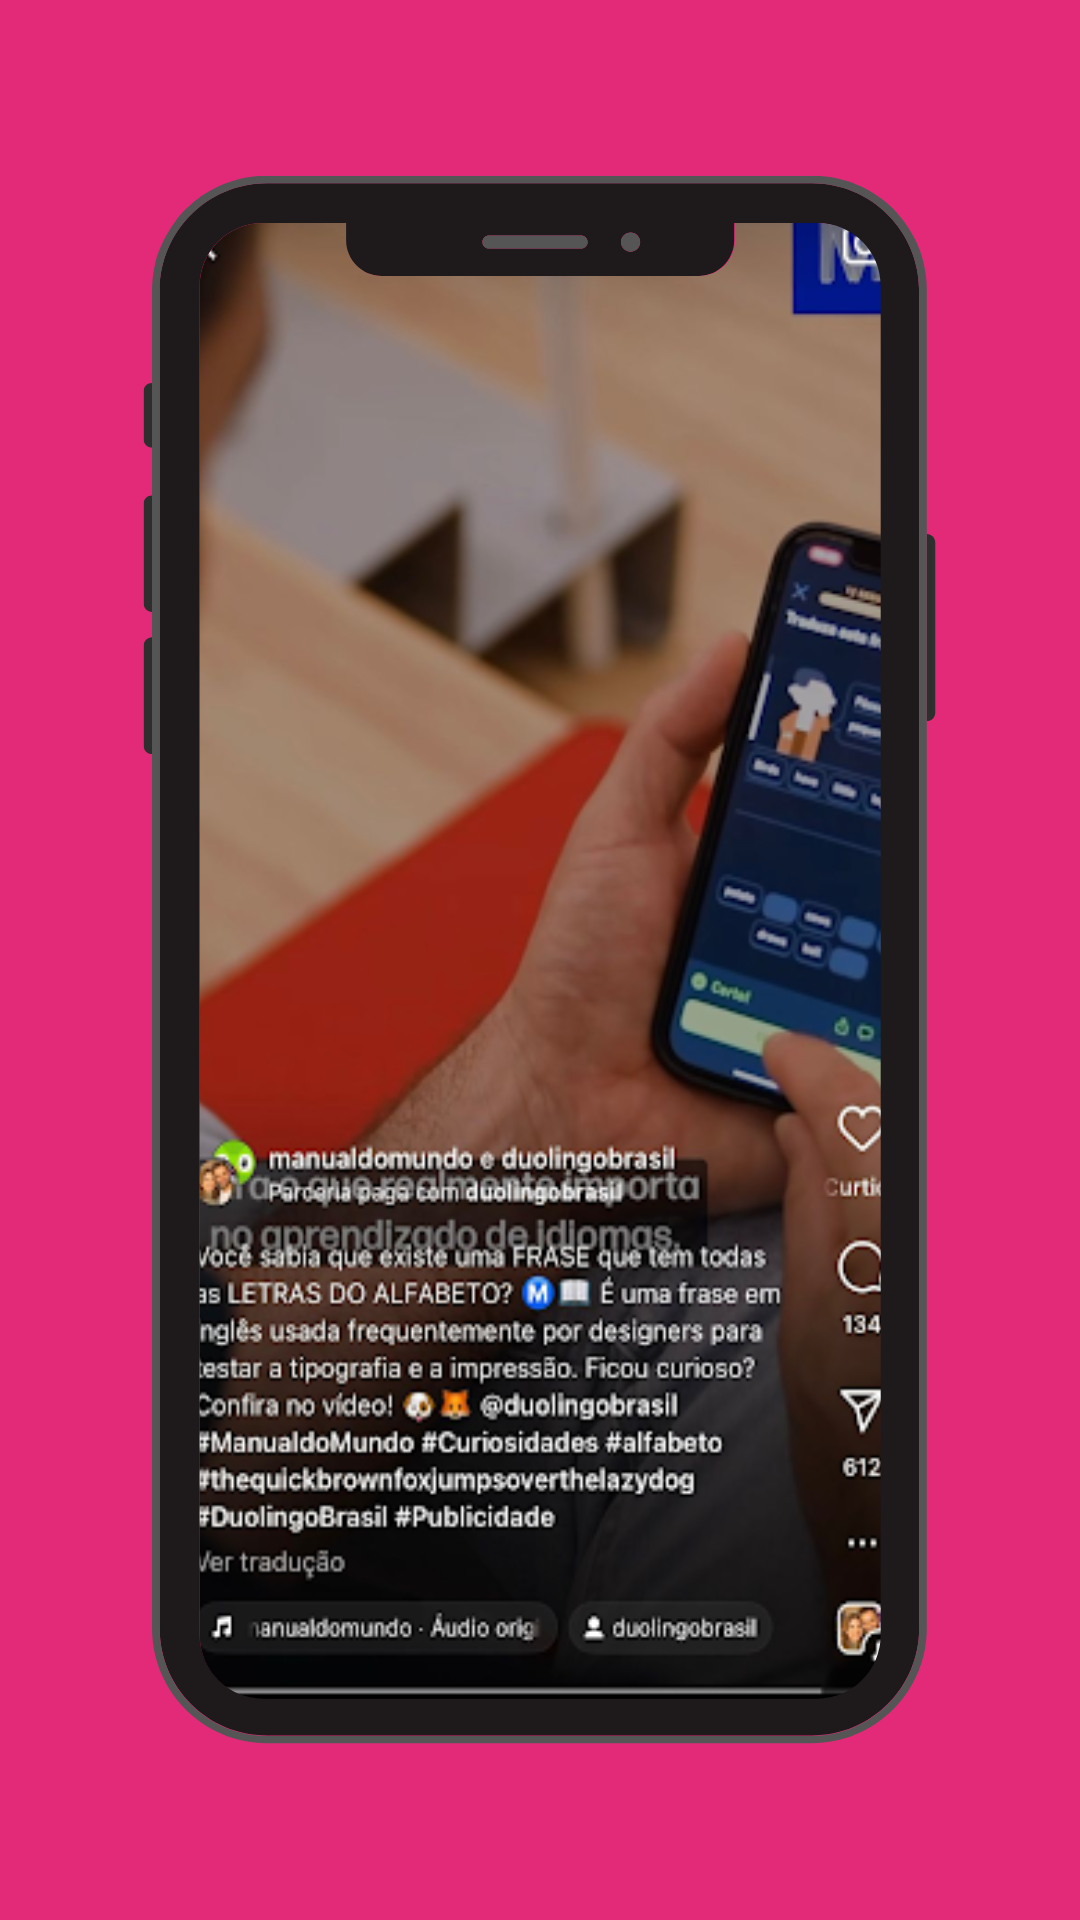 Print de um post do Duolingo no Instagram mostrando o exemplo de legenda curta explanado acima. 